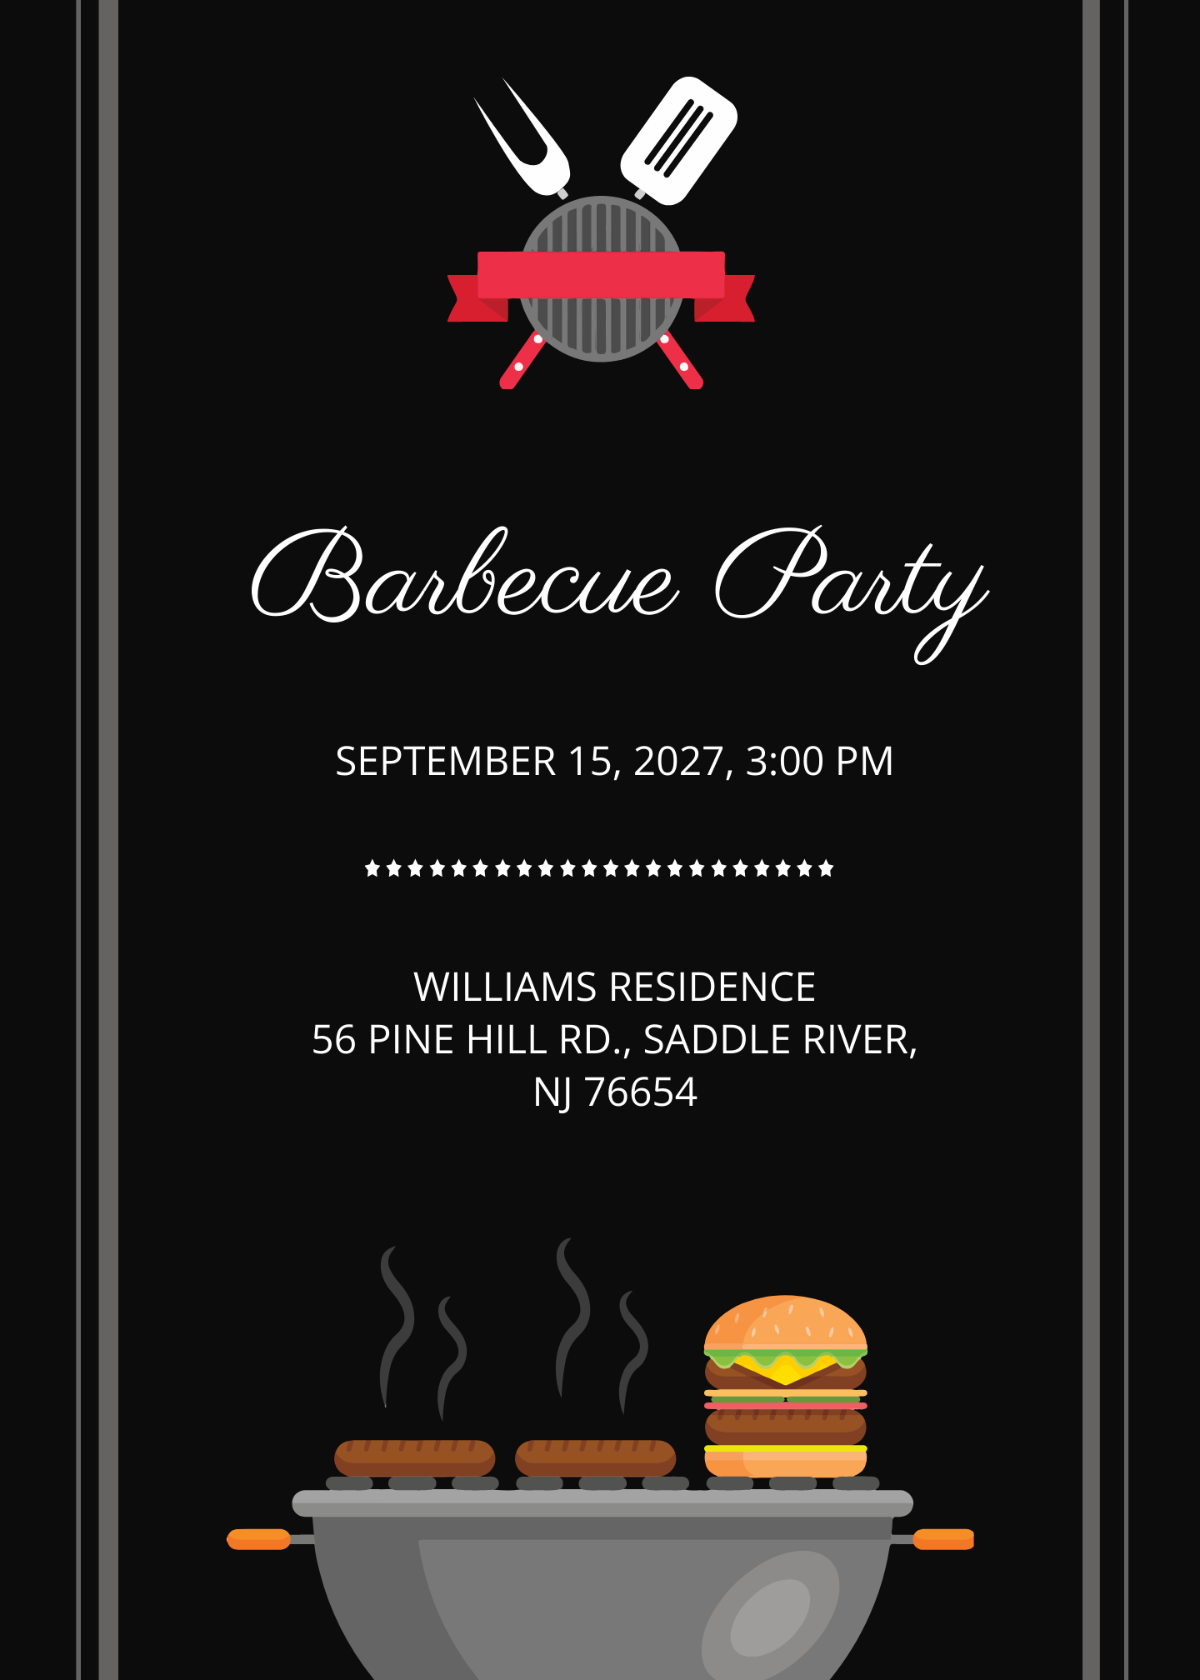 Barbecue Party Invitation Template